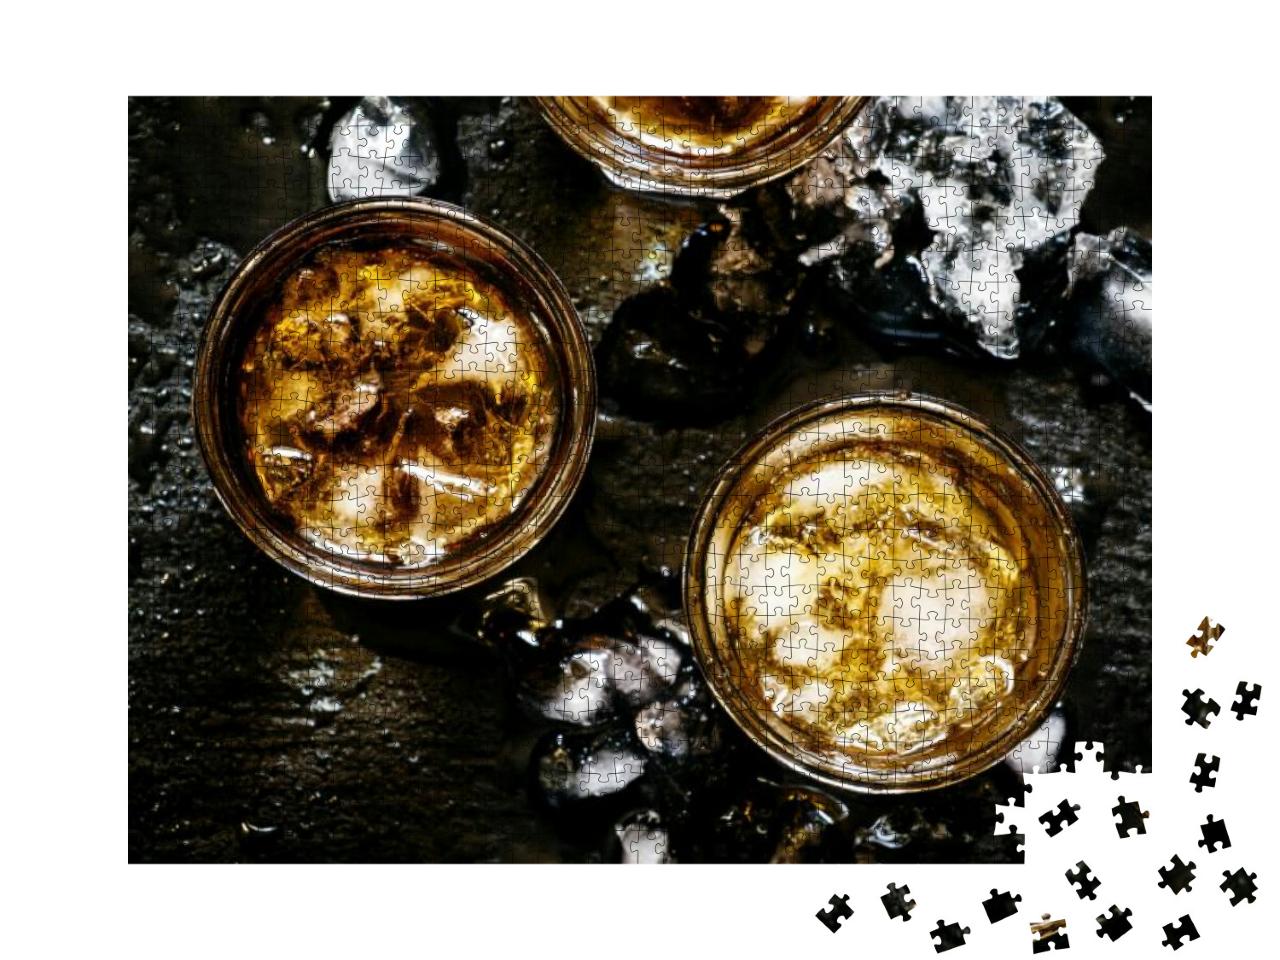 Puzzle 1000 Teile „Kalter Whiskey in einem Glas mit zerstoßenem Eis auf einem schwarzen Stein“